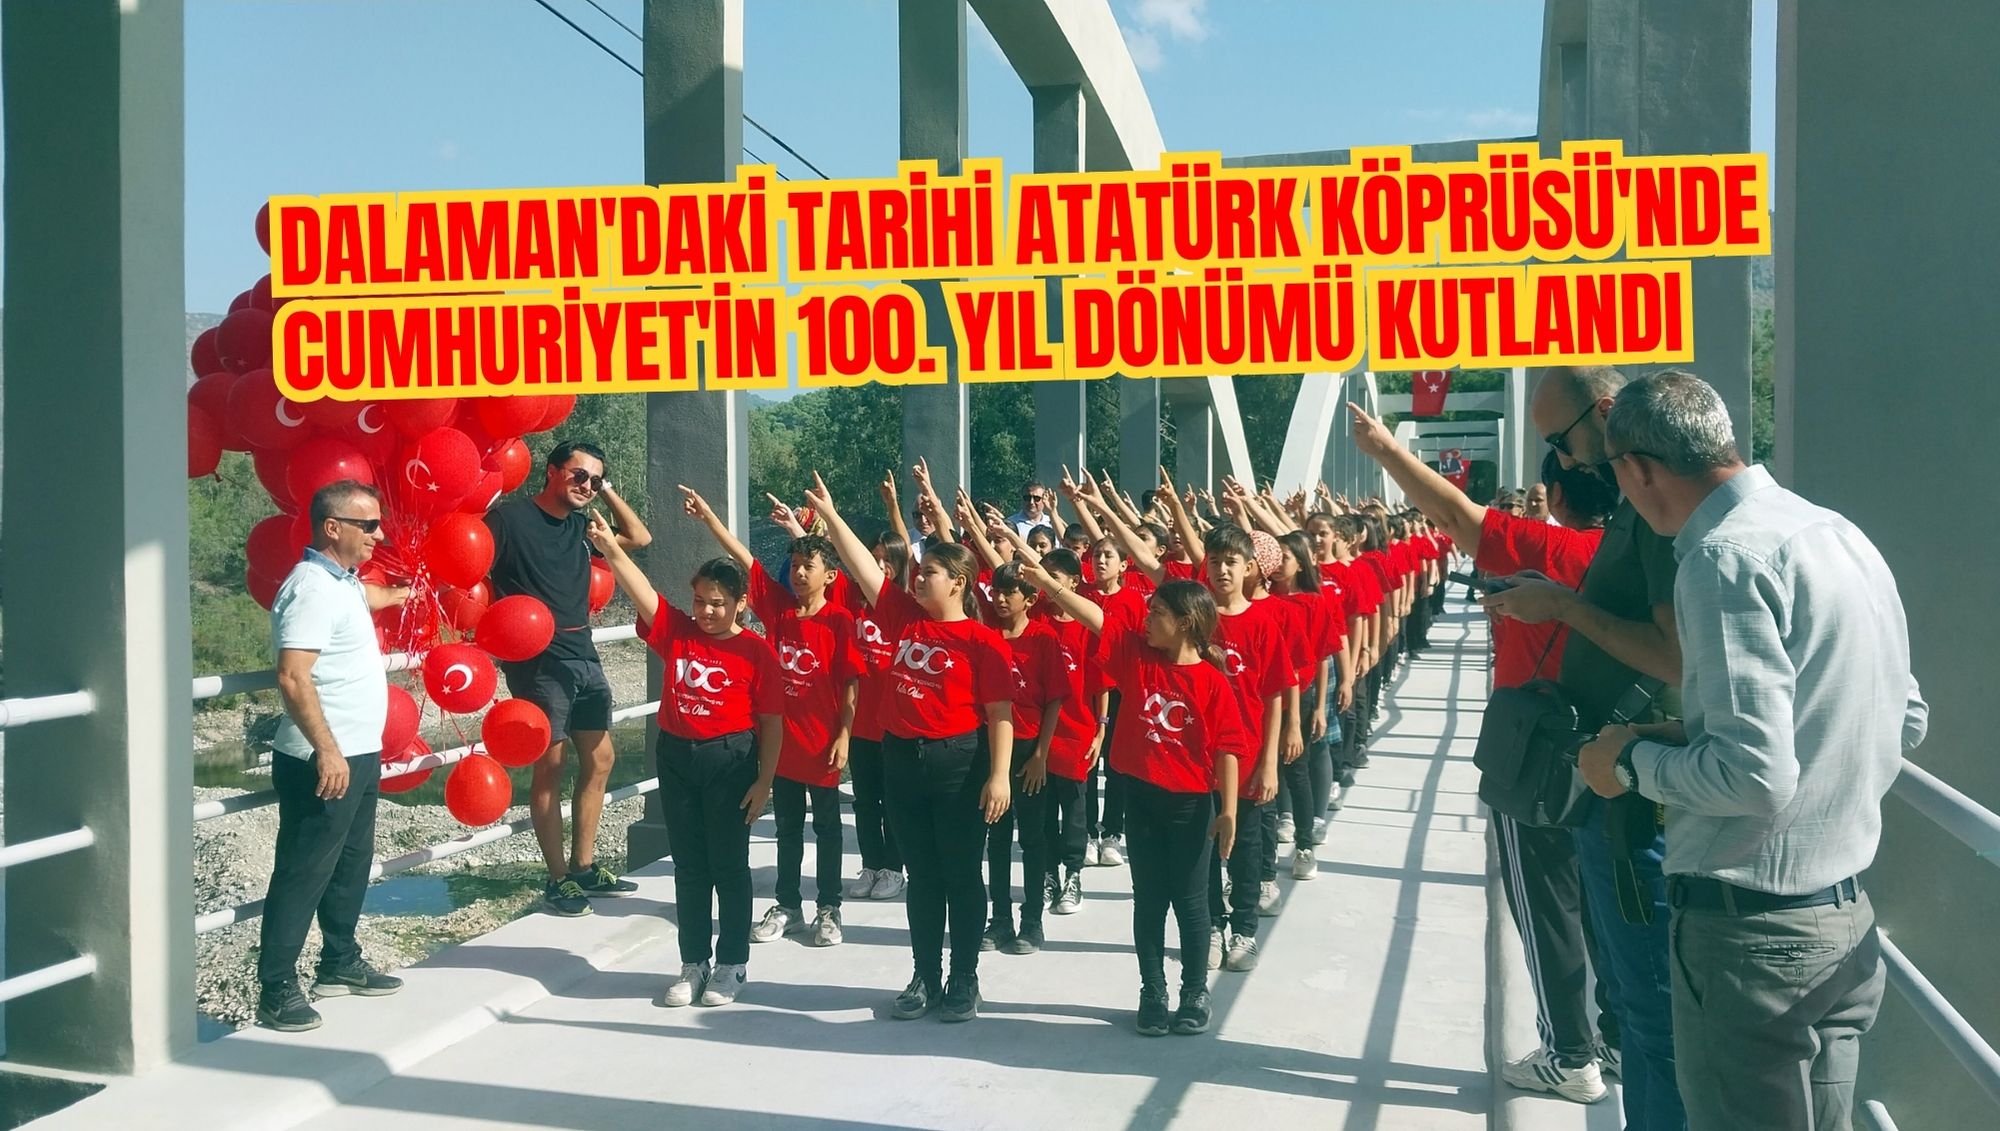 Dalaman'daki tarihi Atatürk Köprüsü'nde Cumhuriyet'in 100. yıl dönümü kutlandı